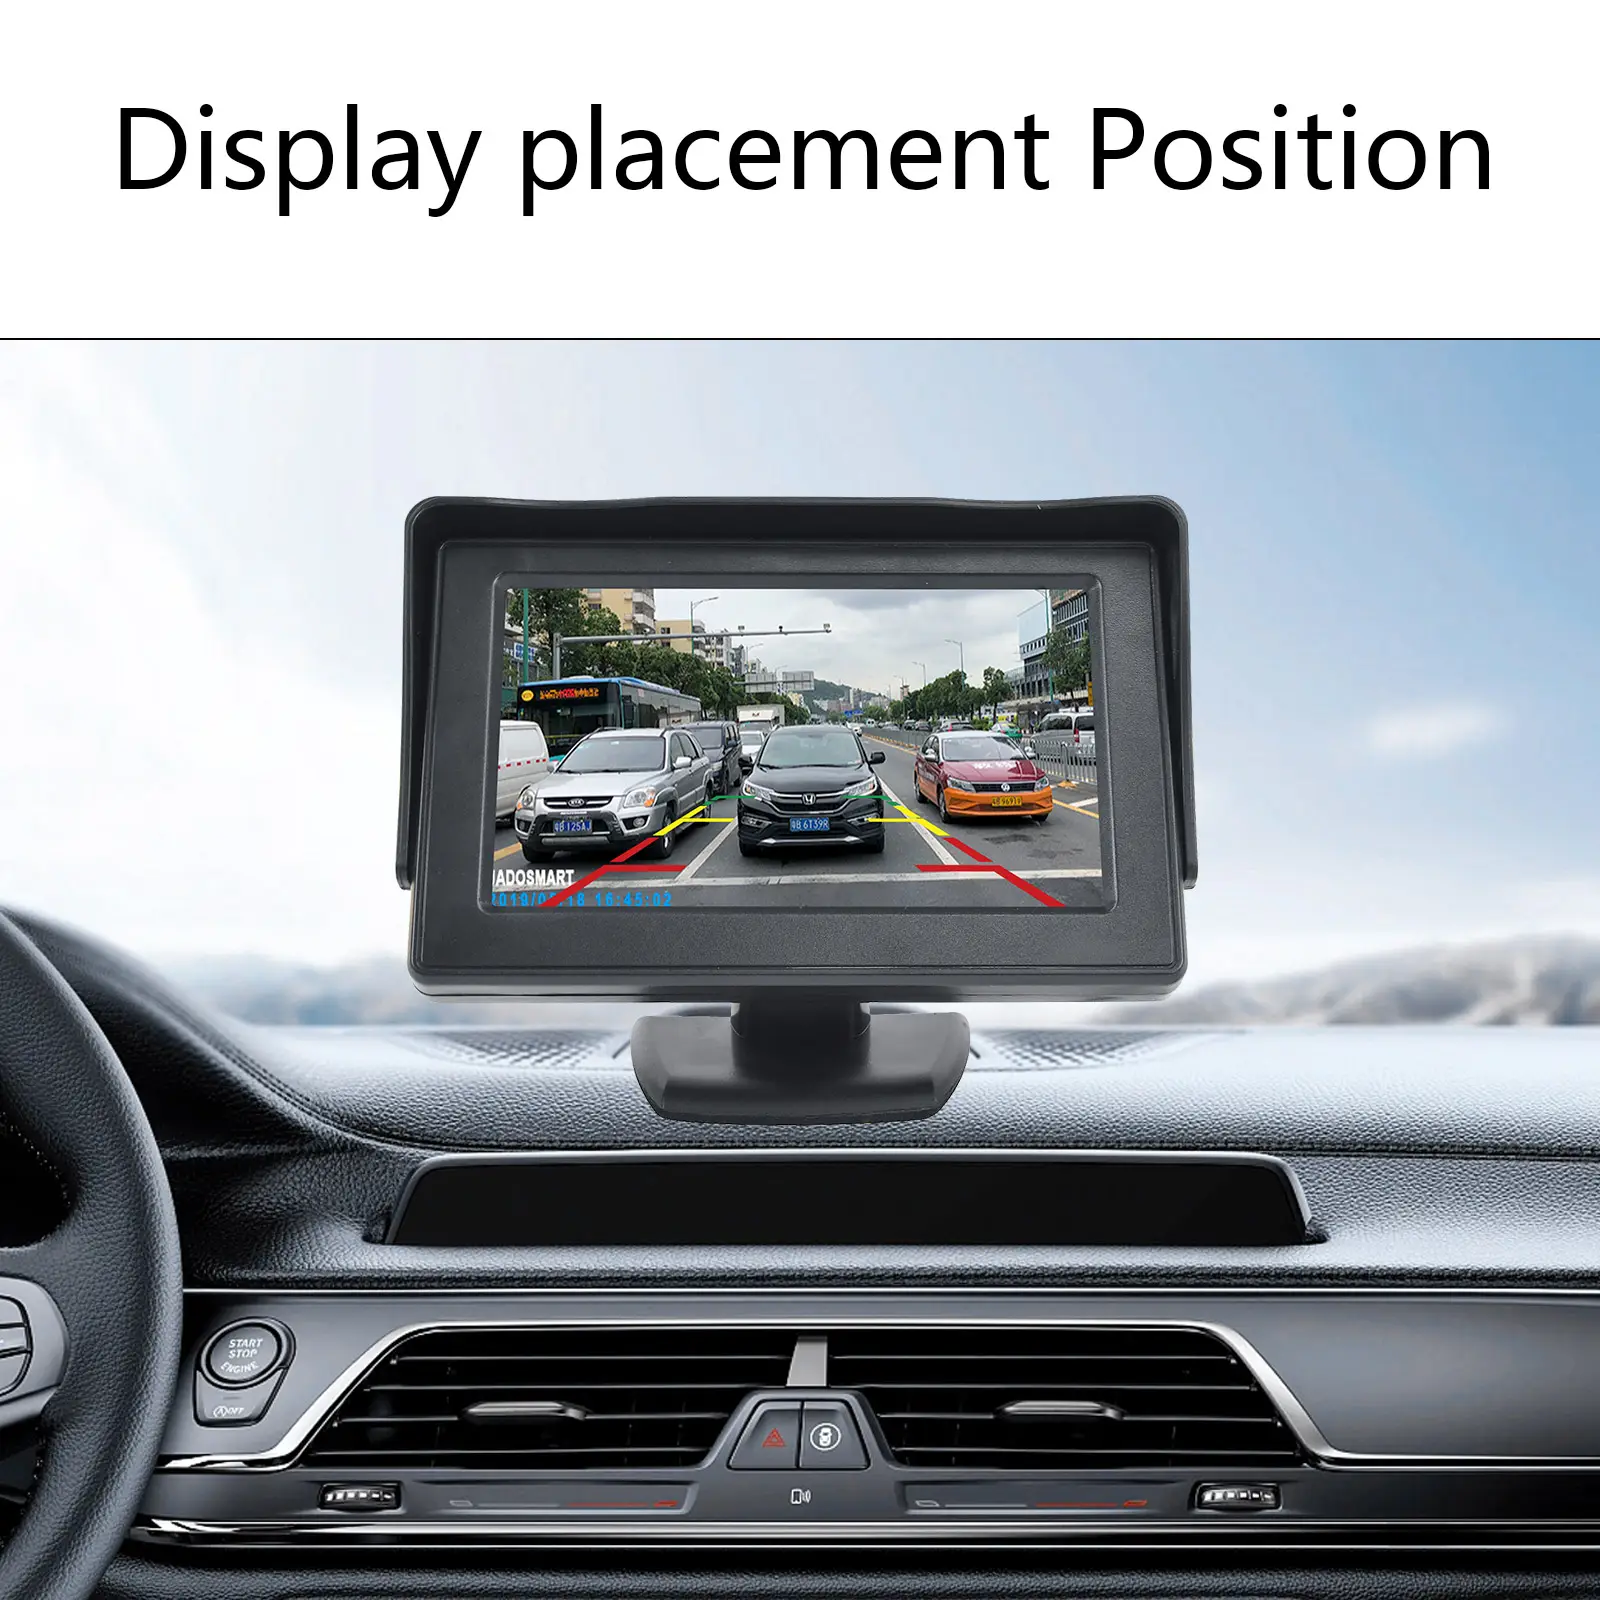 شاشة لوحة القيادة 4.3 بوصة بشاشة مراقبة بتقنية IPS مع مدخلين فيديو لشاشة الرؤية الخلفية للسيارة للرؤية الخلفية والاحتياط بكاميرا للرؤية العكسية